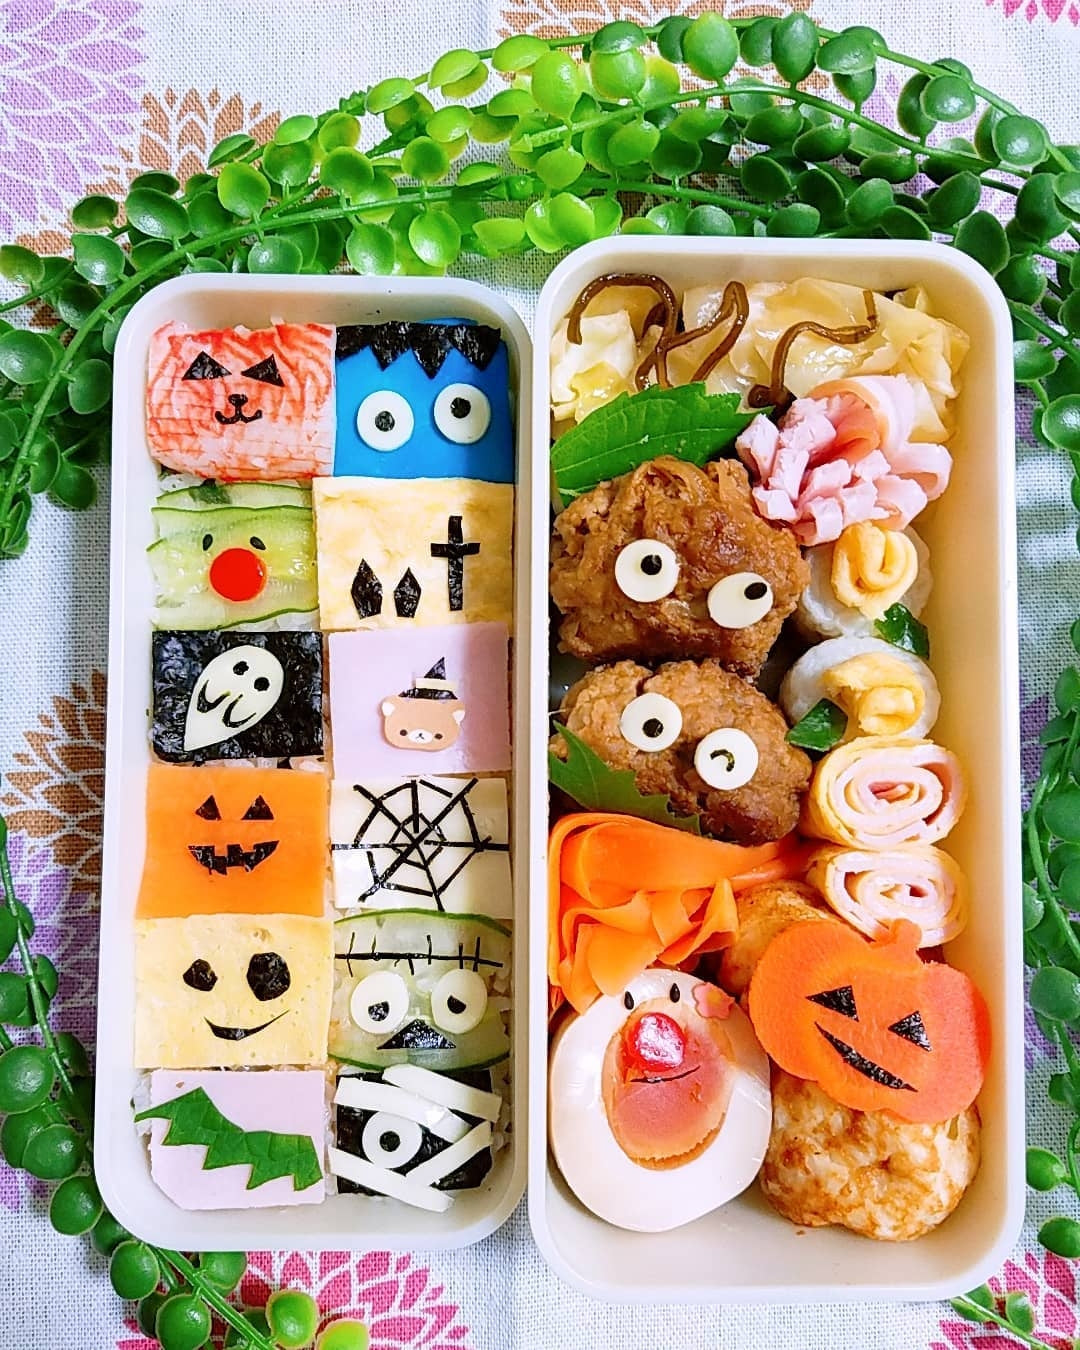 Adorable Halloween Bento Box